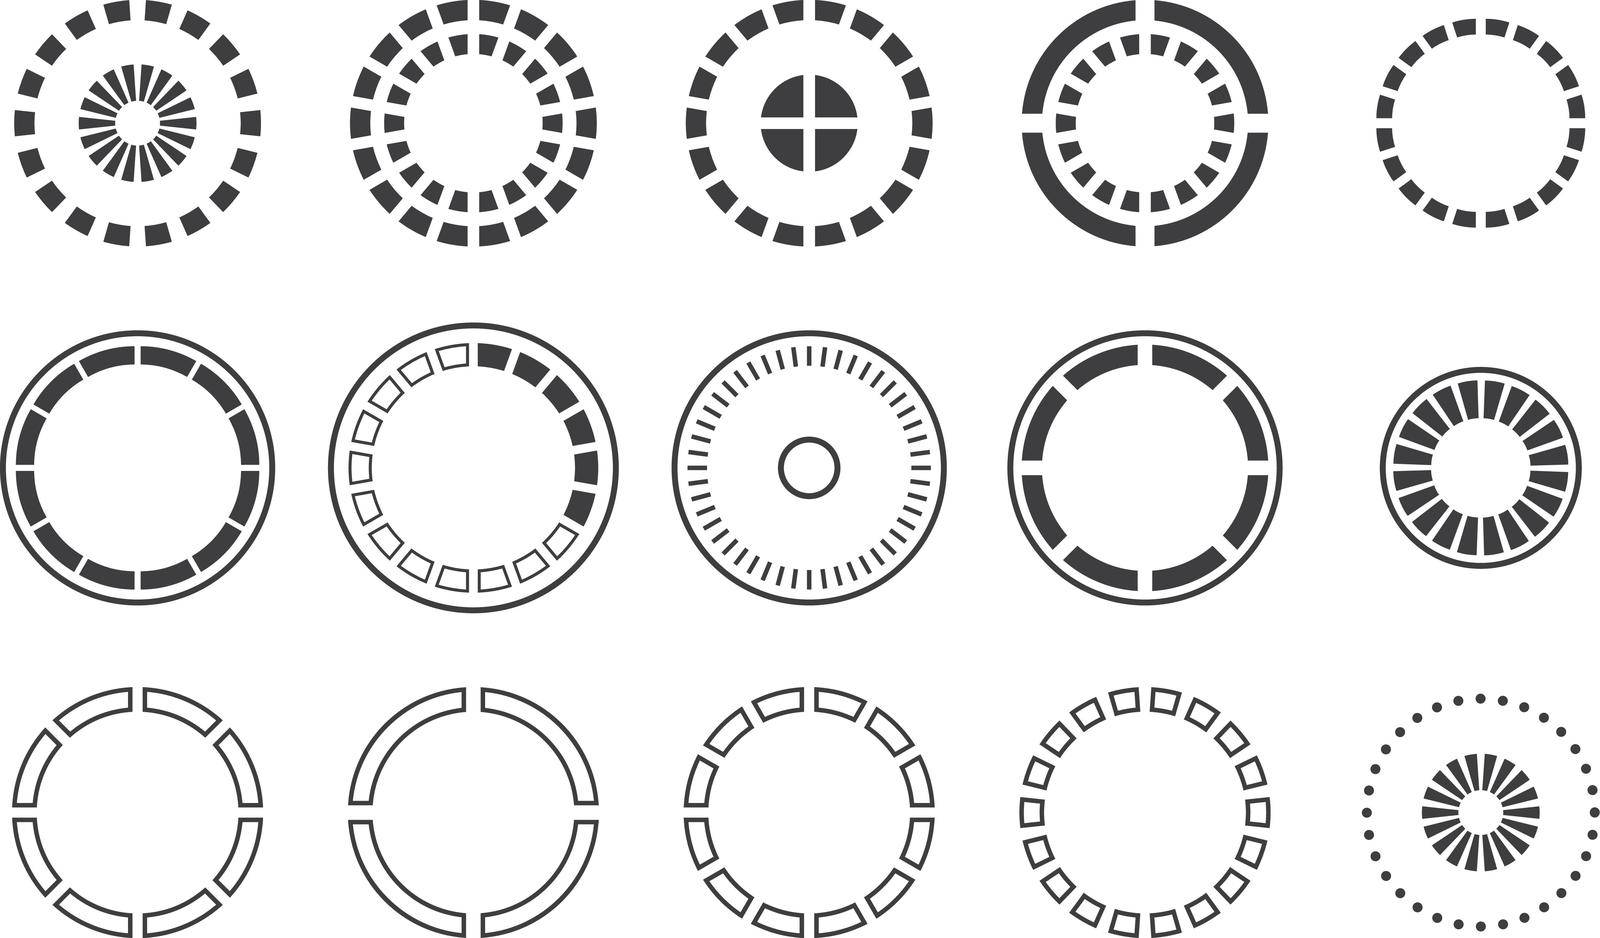 Round progress indicator set. Hud circle elements isolated on white background